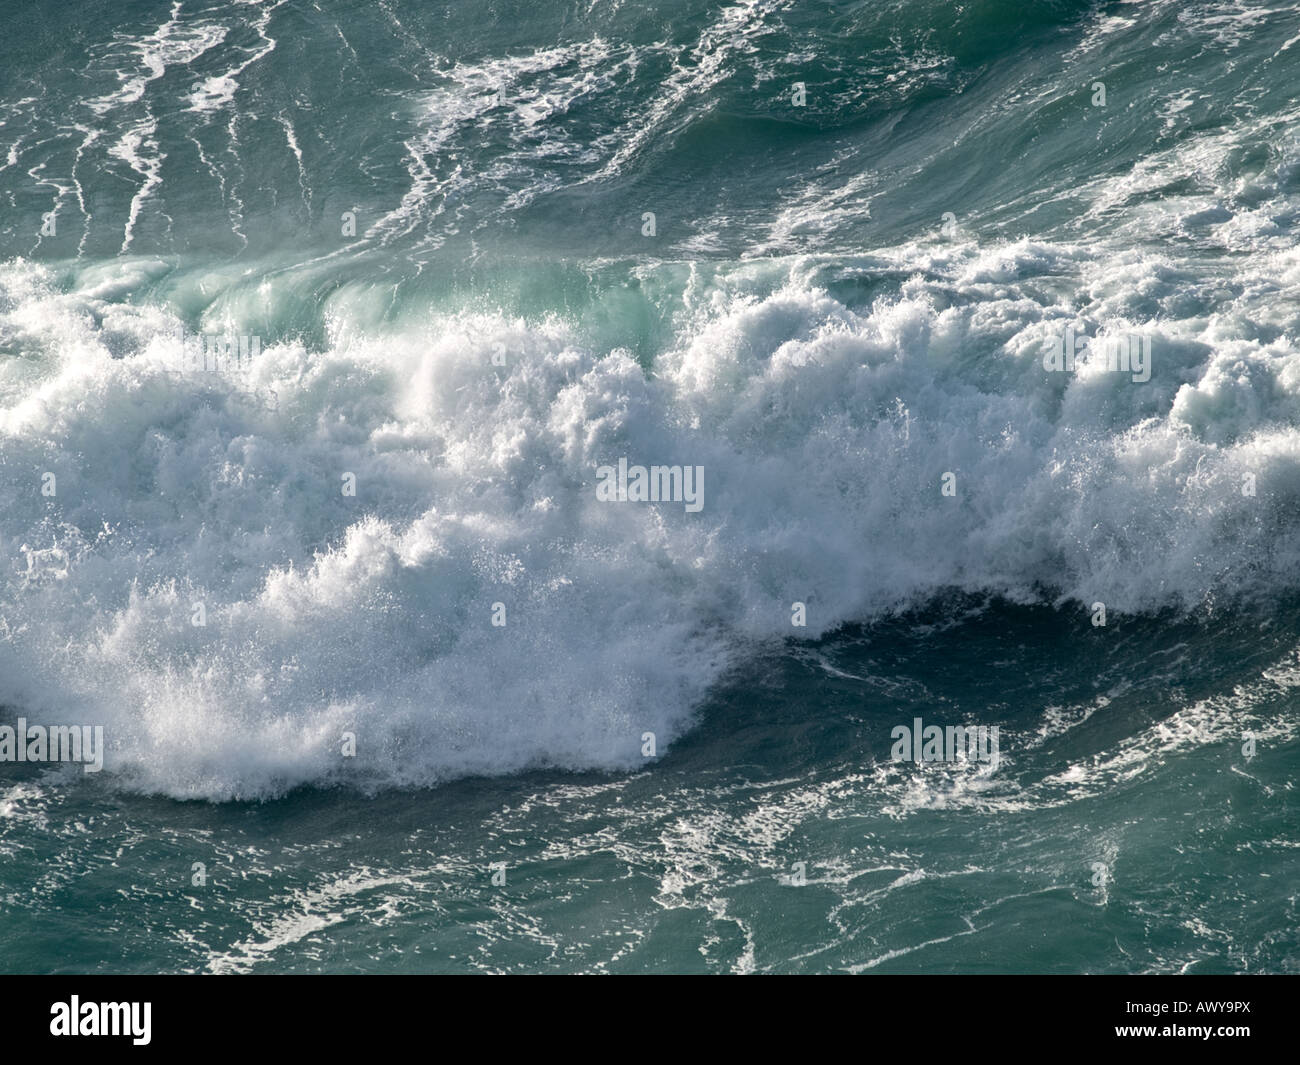 Rough seas Stock Photo